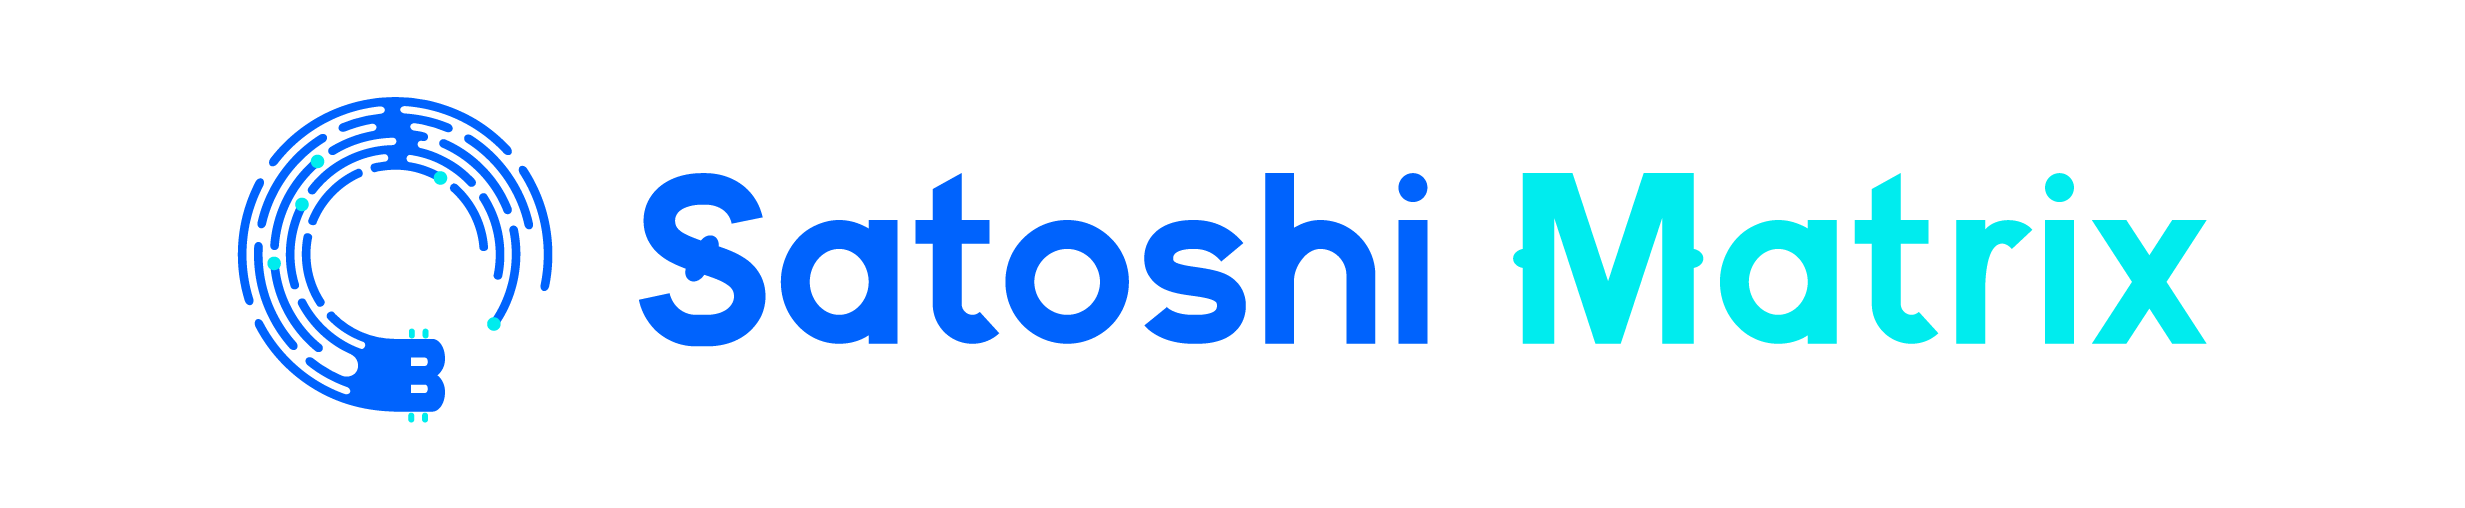 Satoshi Matrix